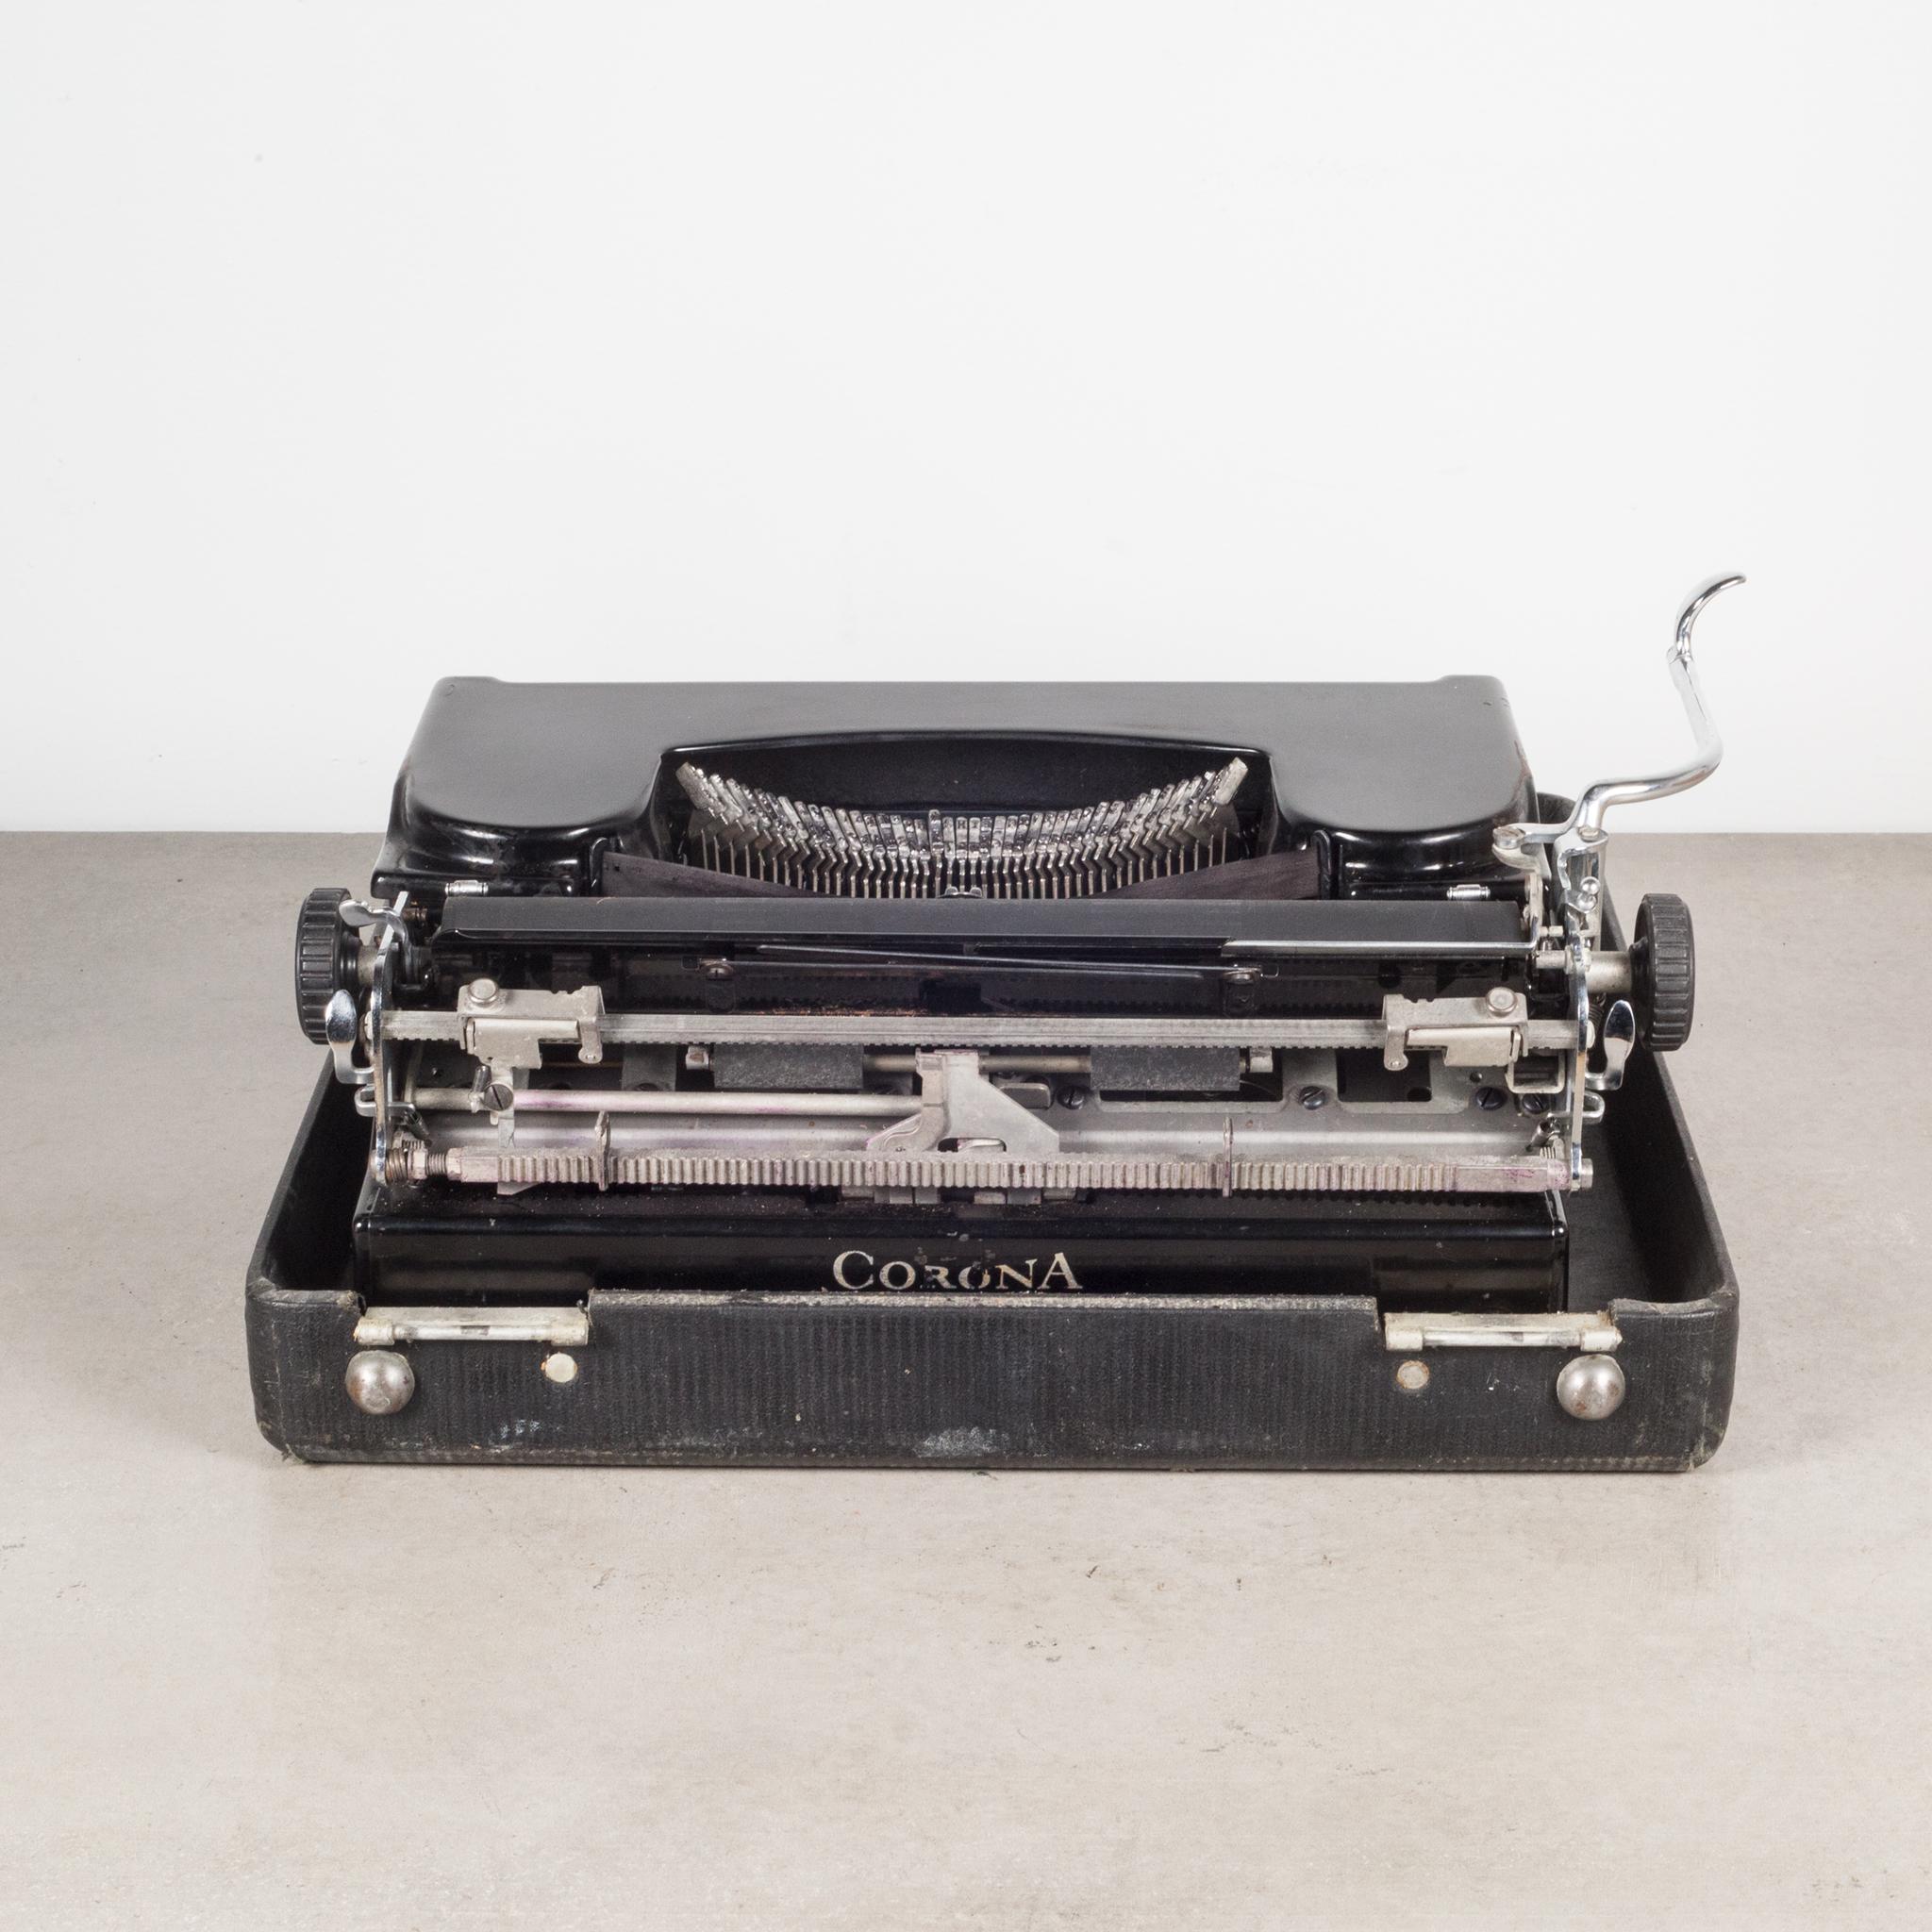 Metal Fully Refurbished Corona Sterling Typewriter, c.1936